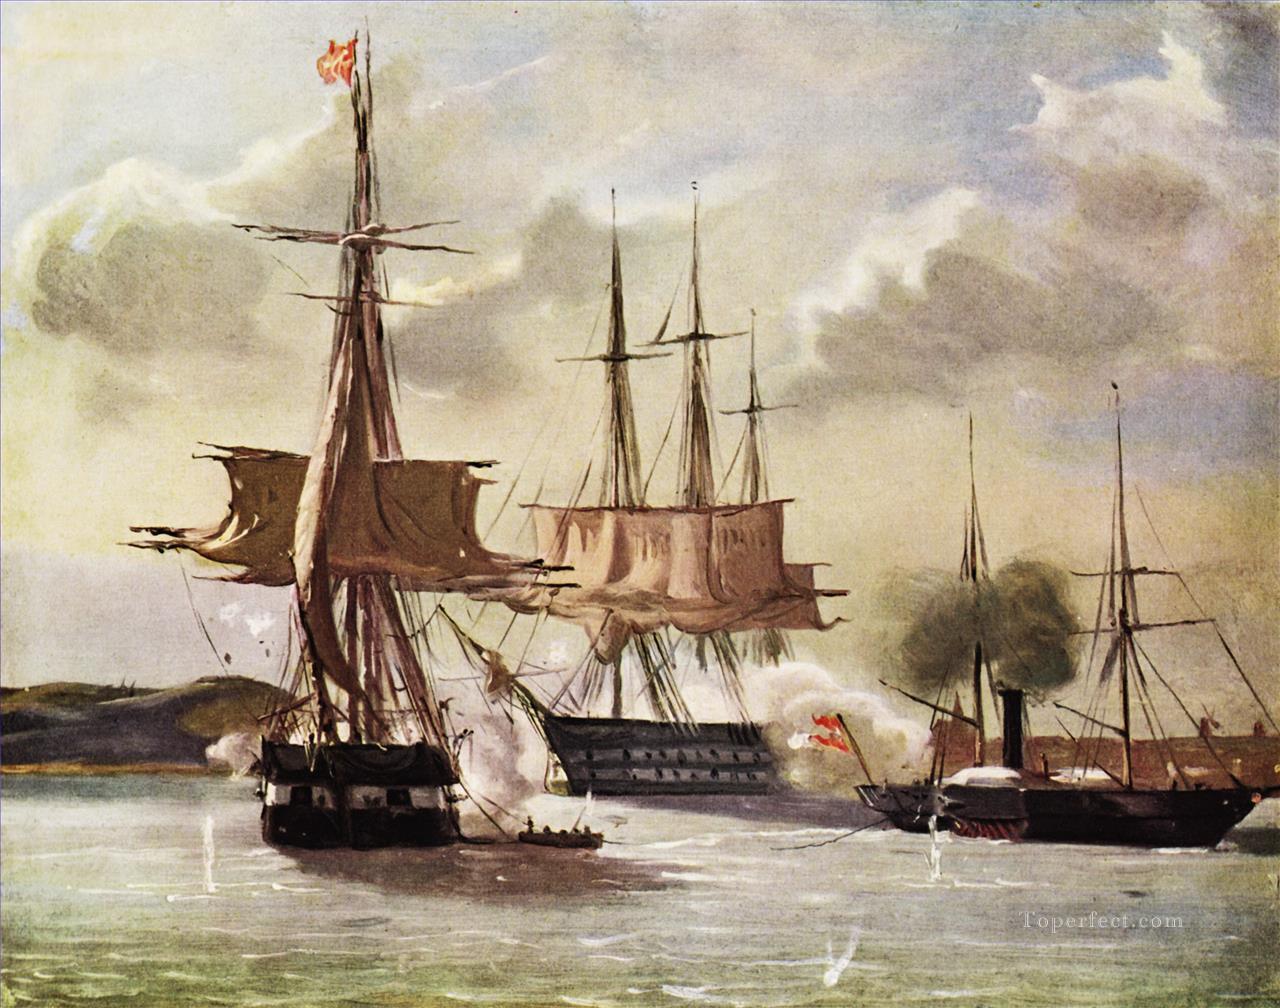 ヴィルヘルム・ペダーセン スラゲットとエッカーンフォルデのシーン 1849 年海戦油絵